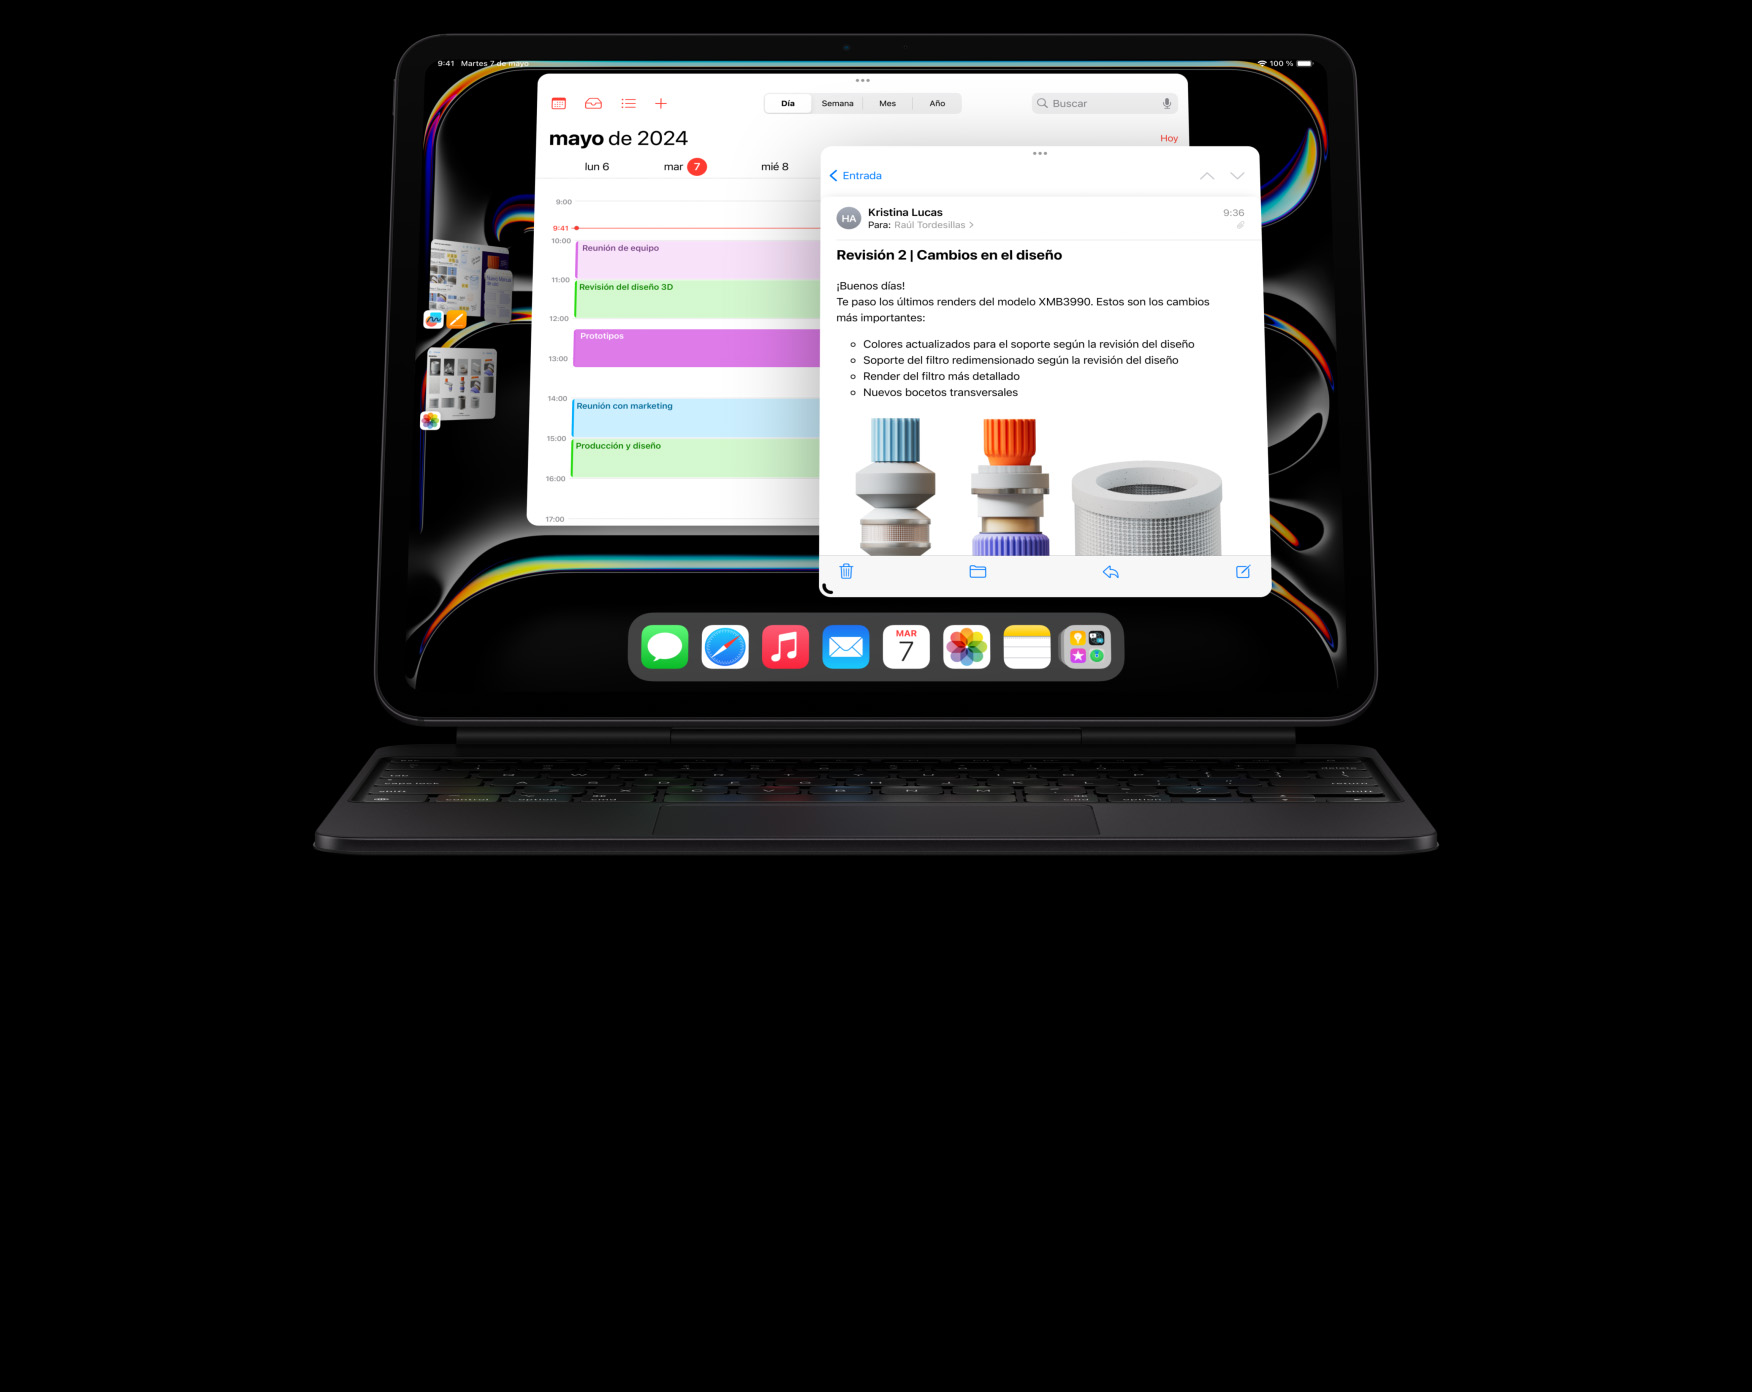 Vista horizontal del iPad Pro acoplado a un Magic Keyboard que muestra la multitarea con varias apps en uso